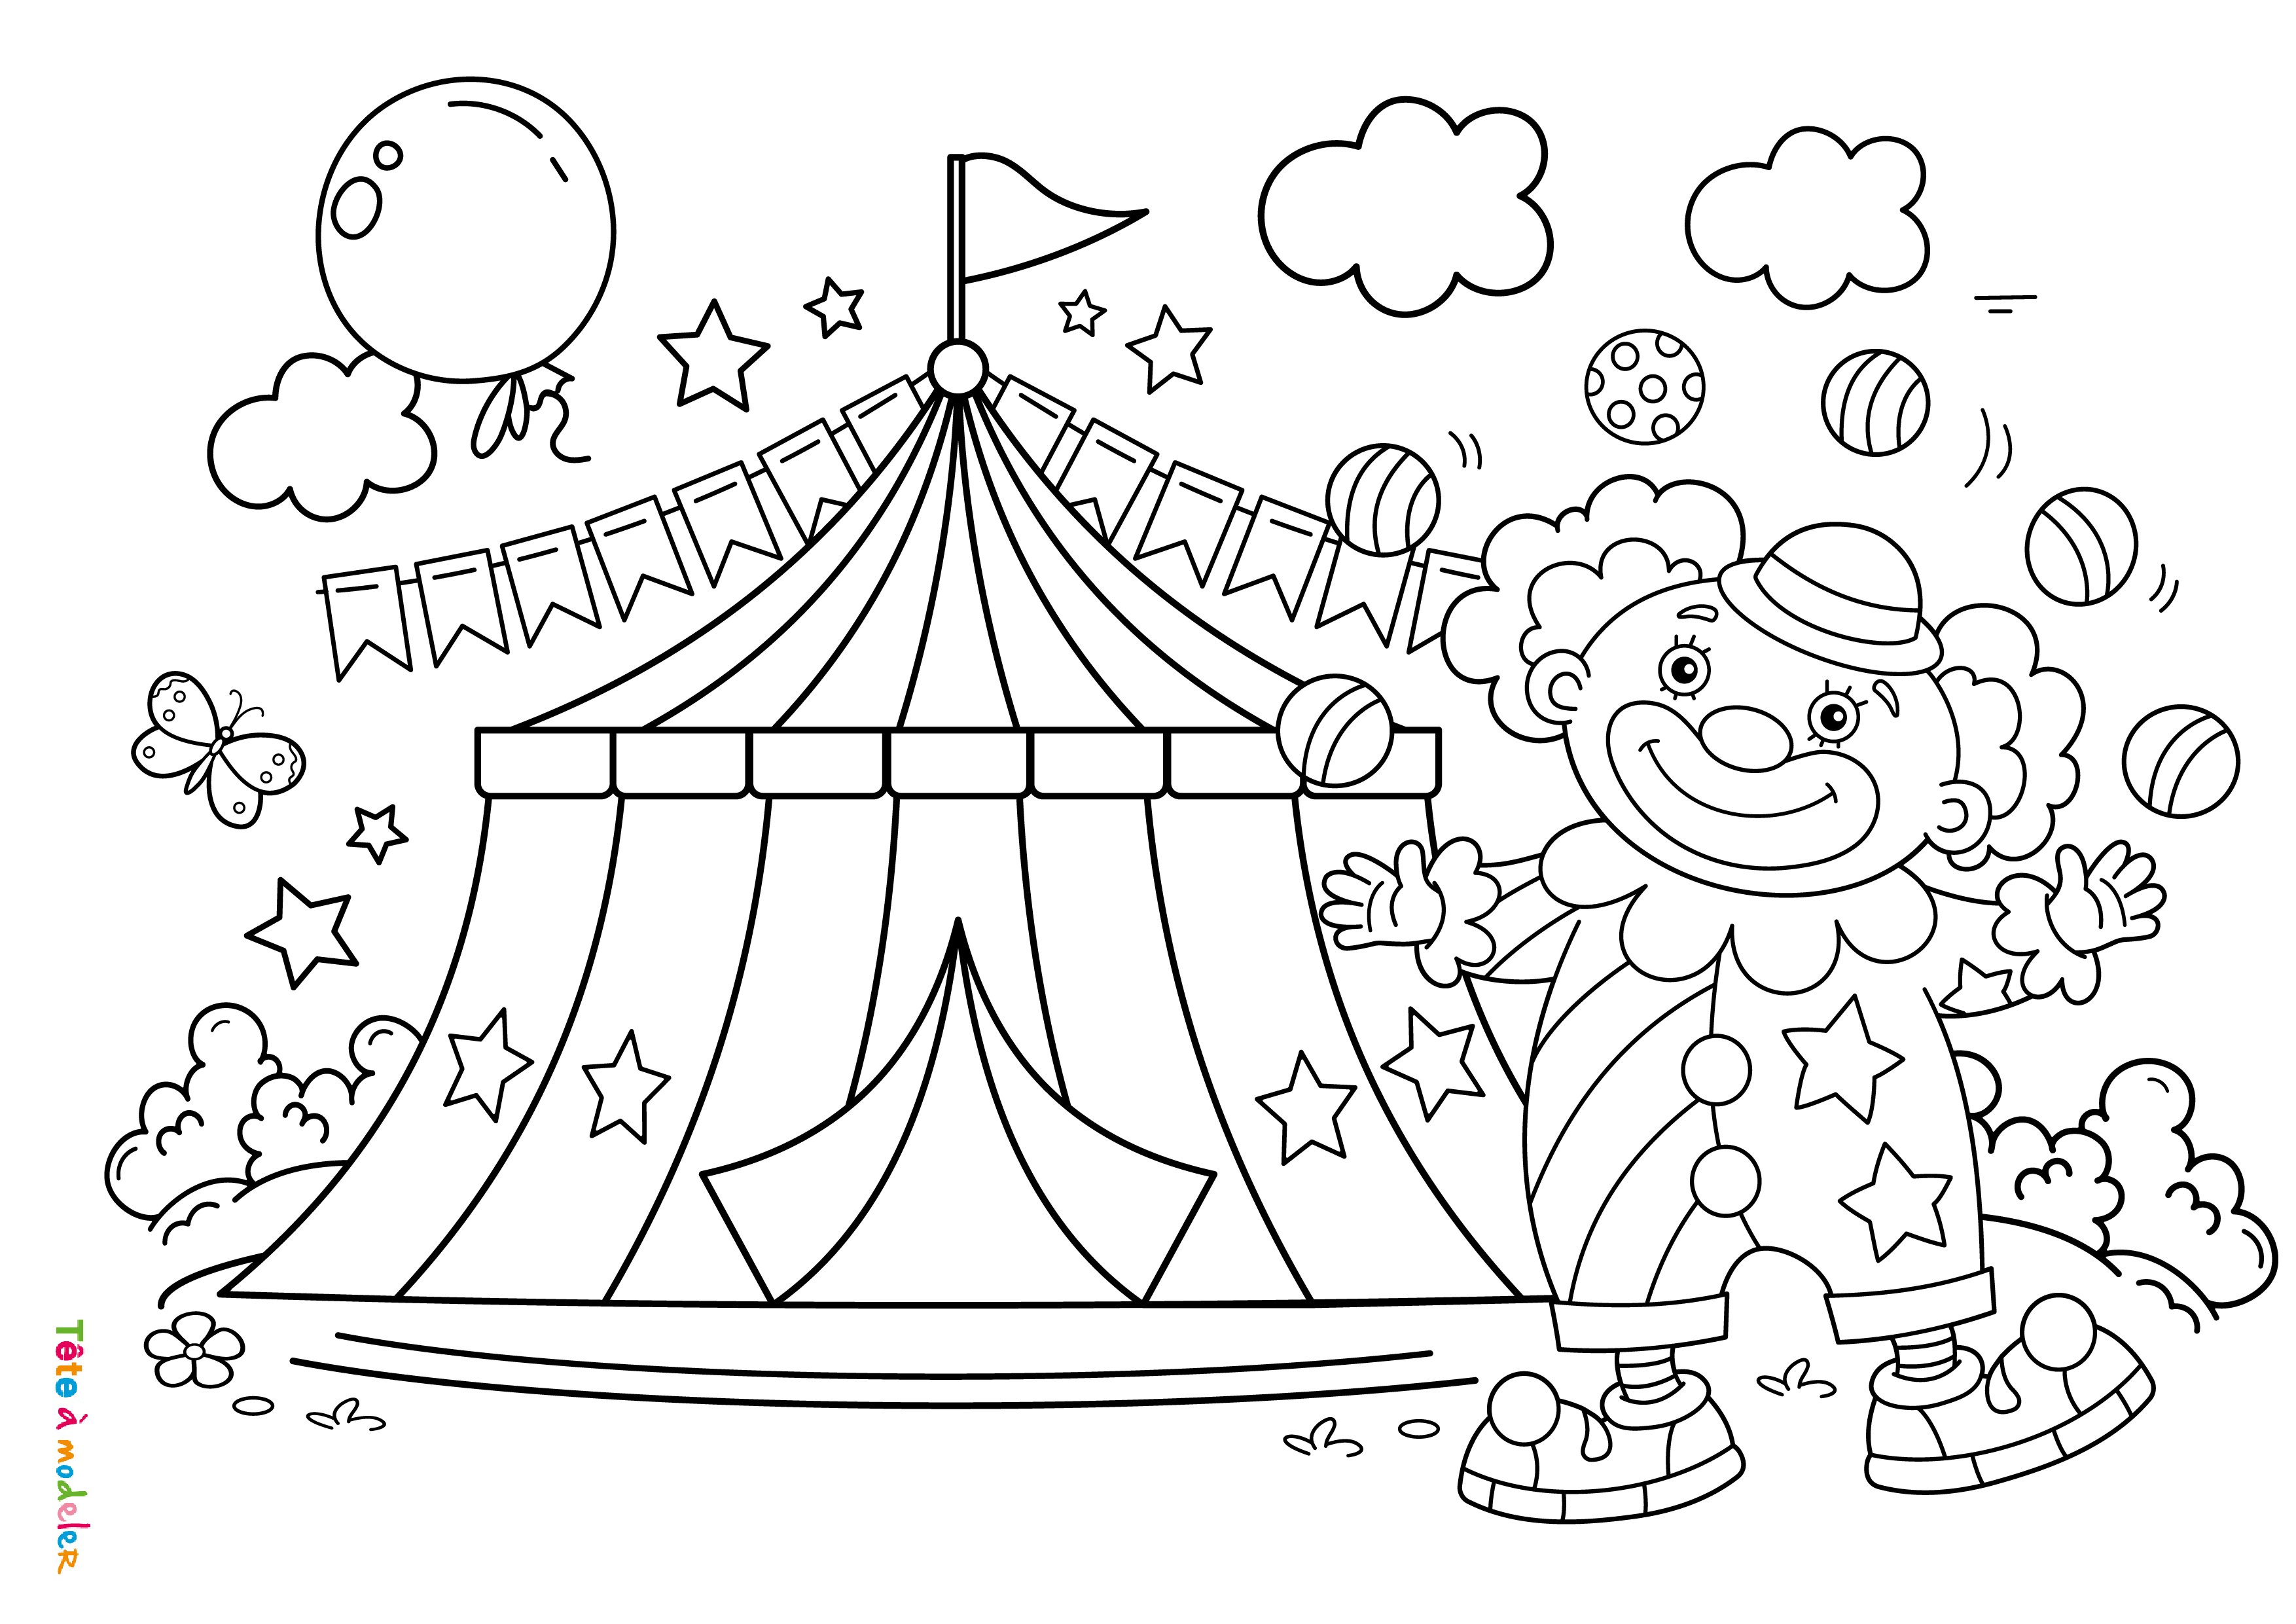 Как нарисовать цирк красиво?